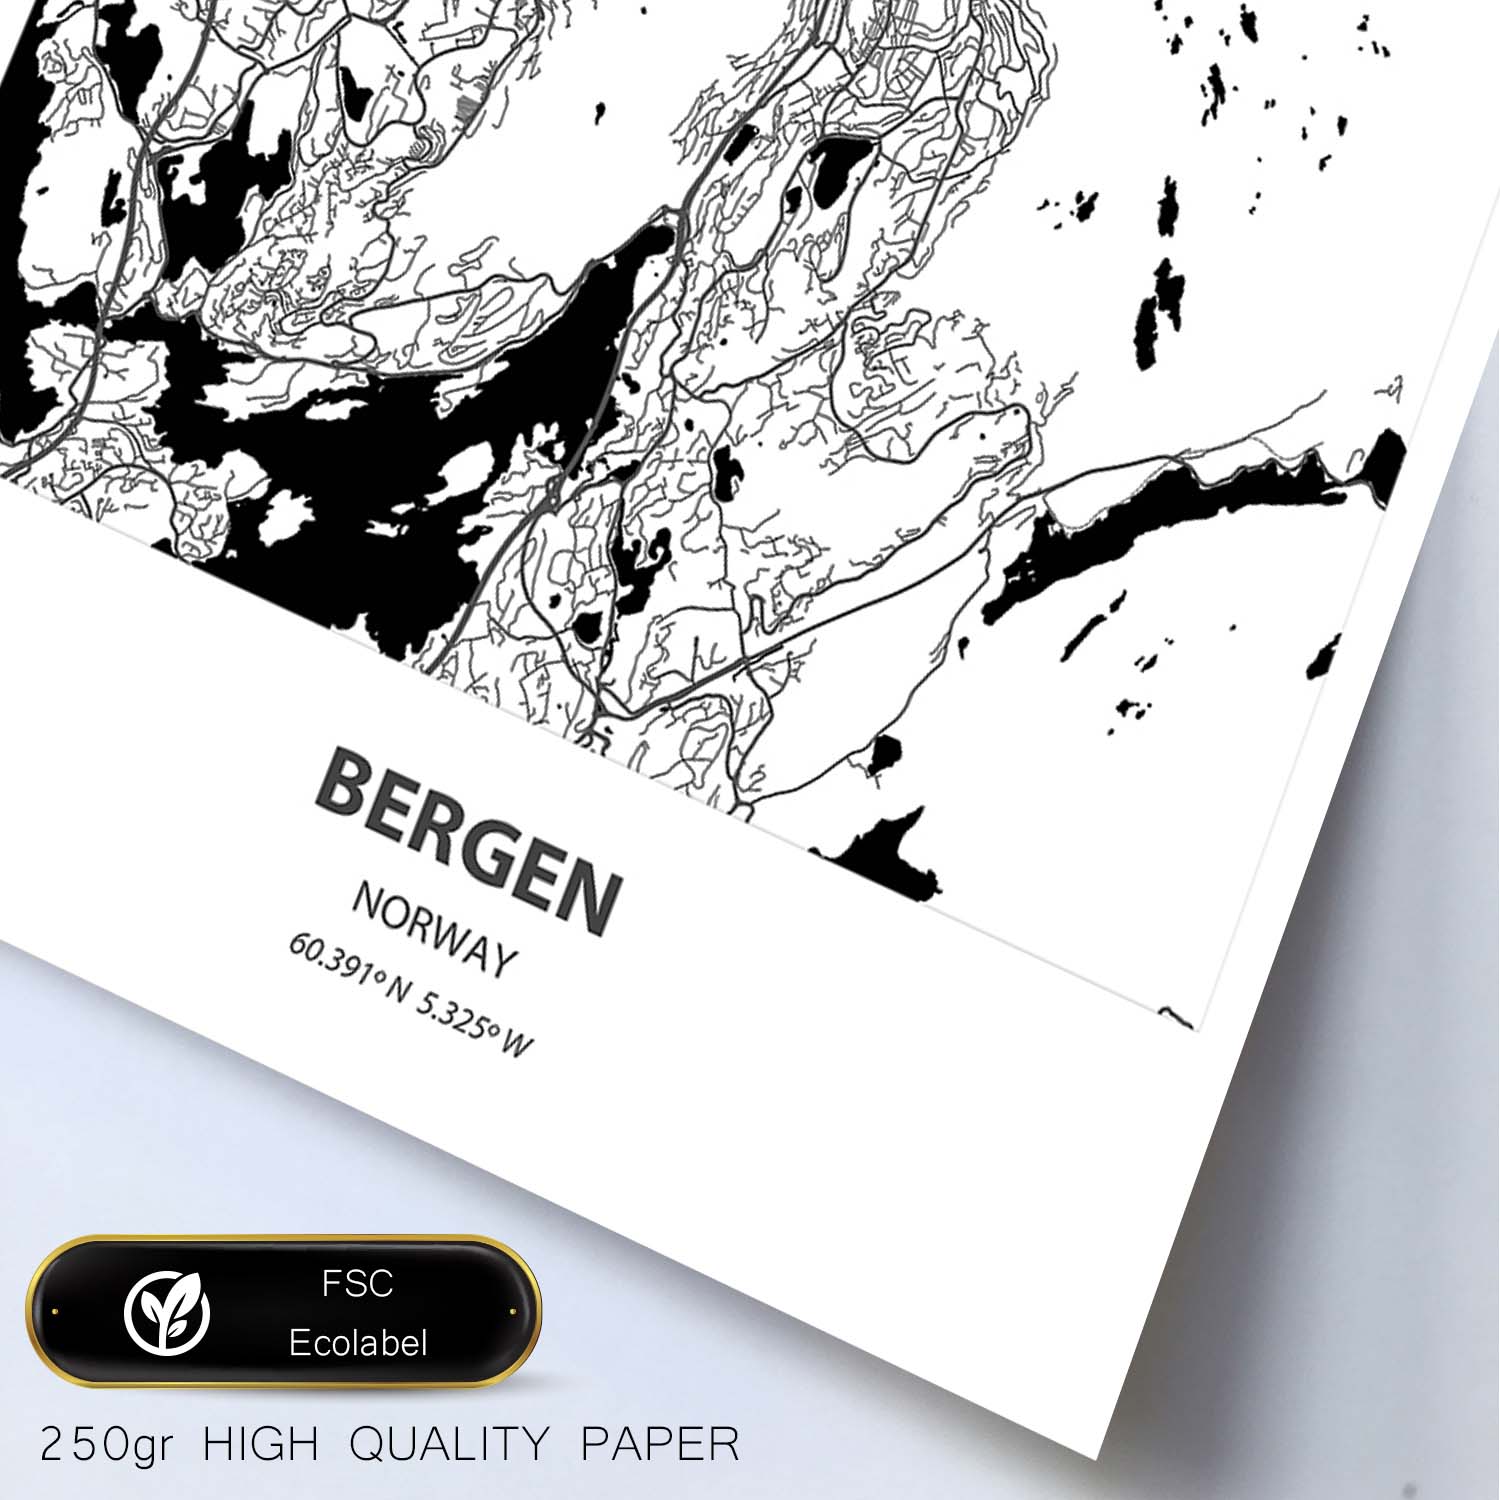 Poster con mapa de Bergen - Noruega. Láminas de ciudades del norte de Europa con mares y ríos en color negro.-Artwork-Nacnic-Nacnic Estudio SL